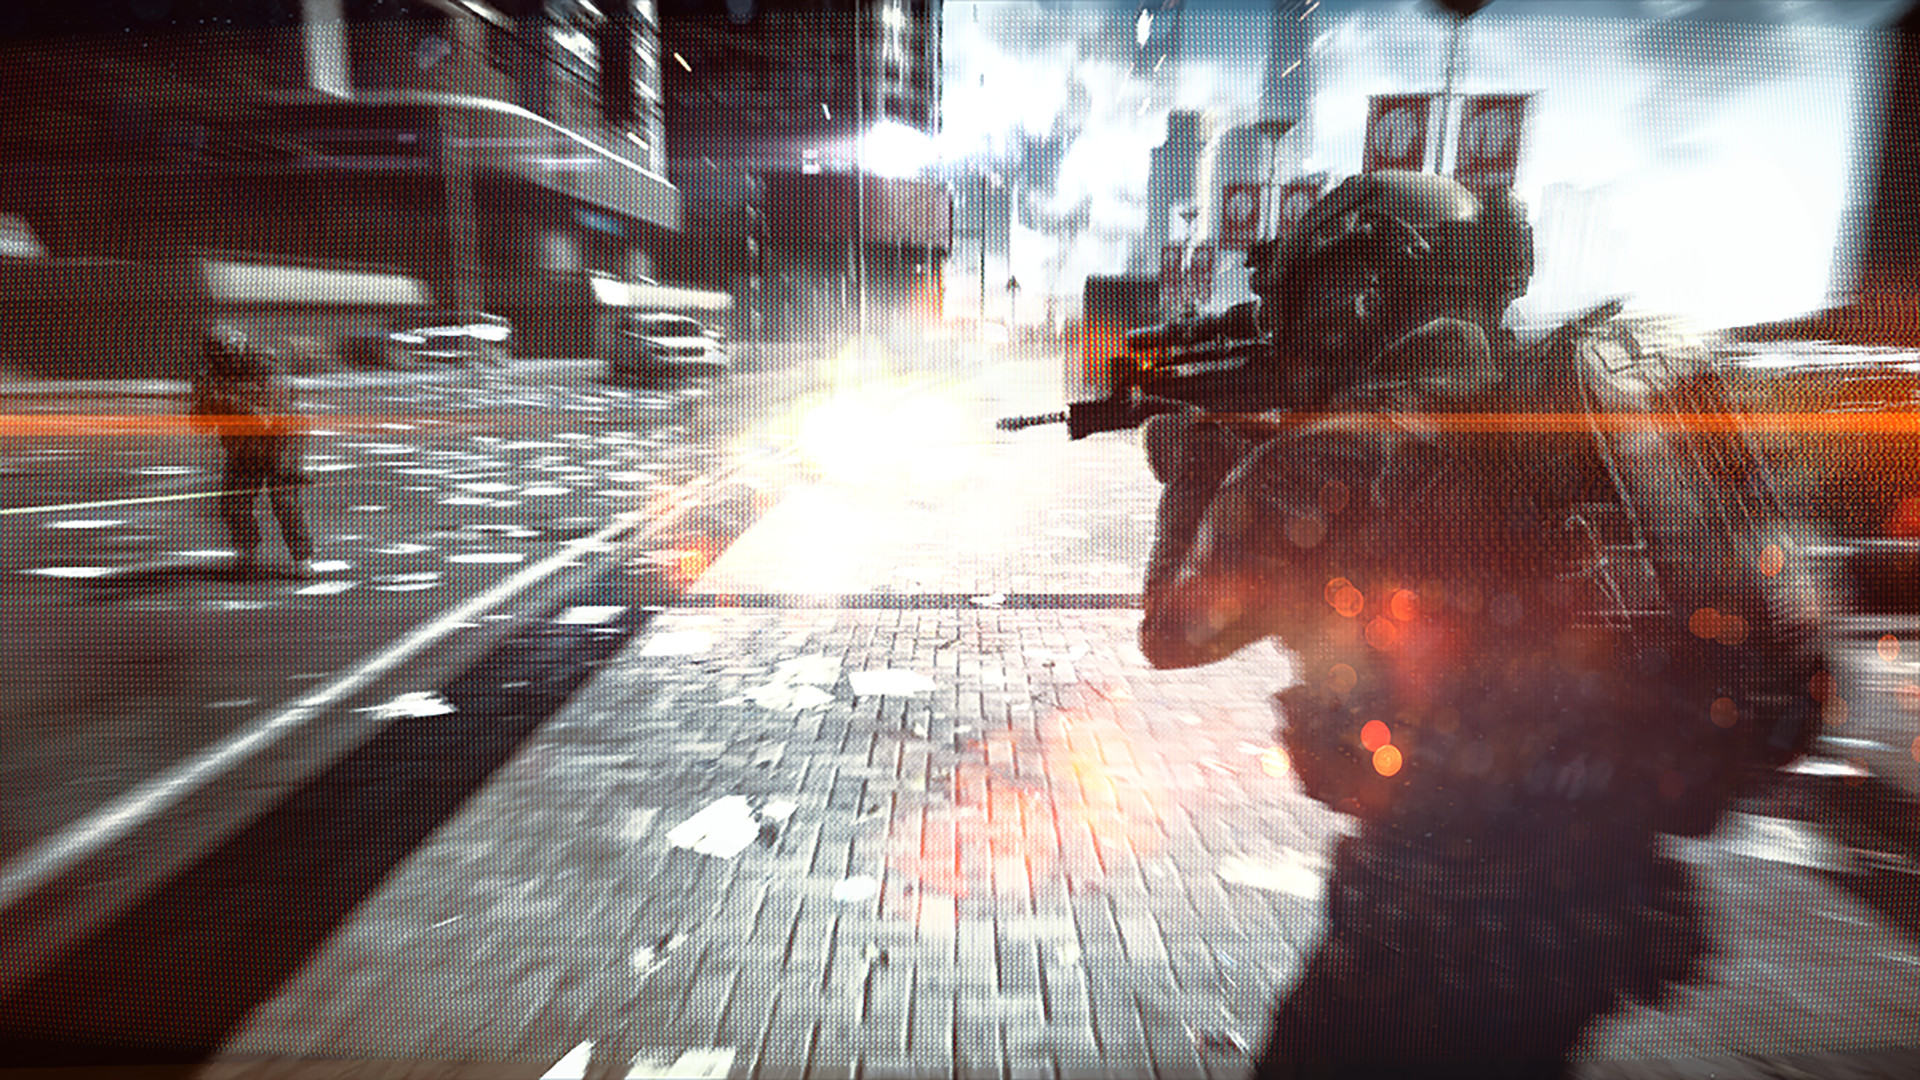 Steam DLC Page: Battlefield 4™